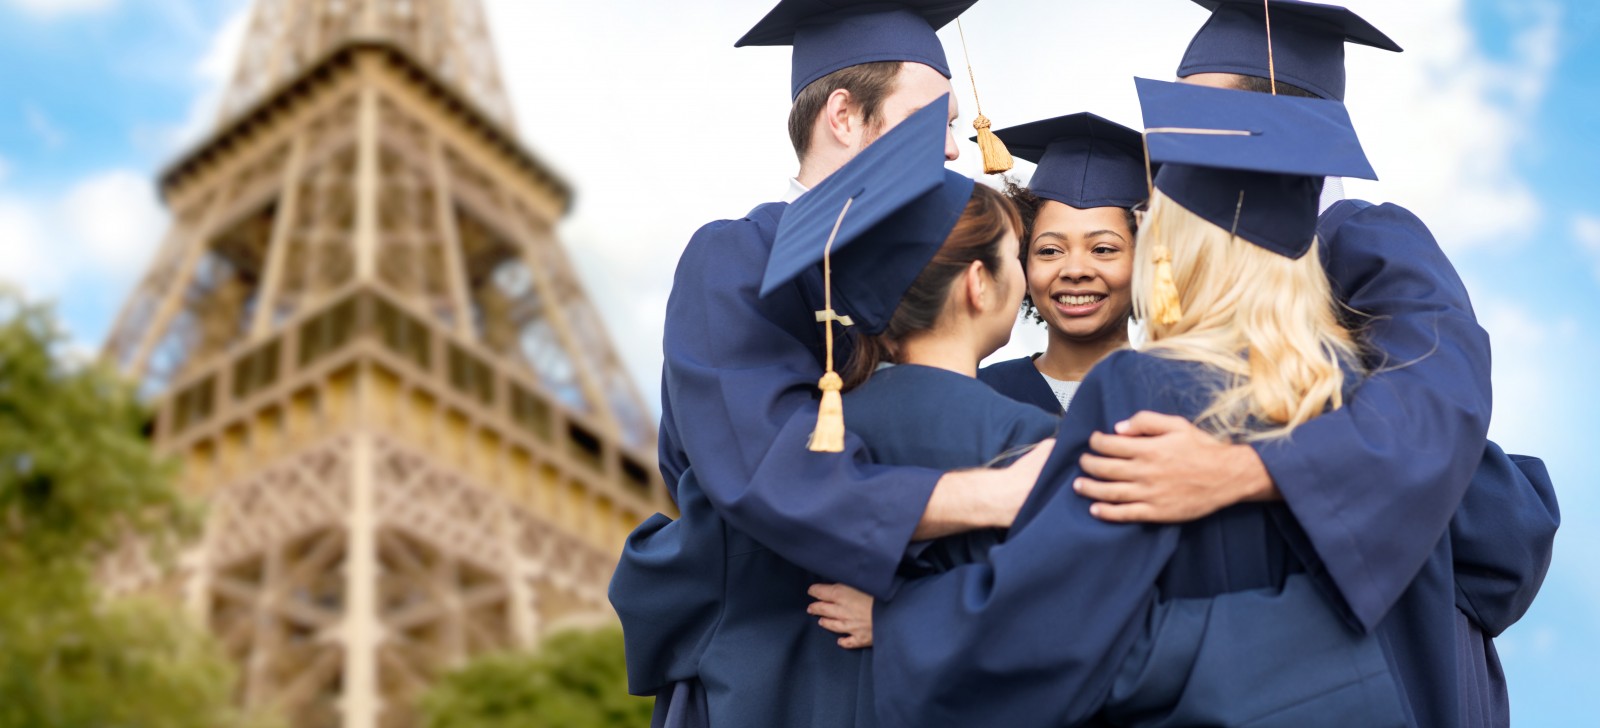 Иммиграция во францию через обучение, образовательная иммиграция